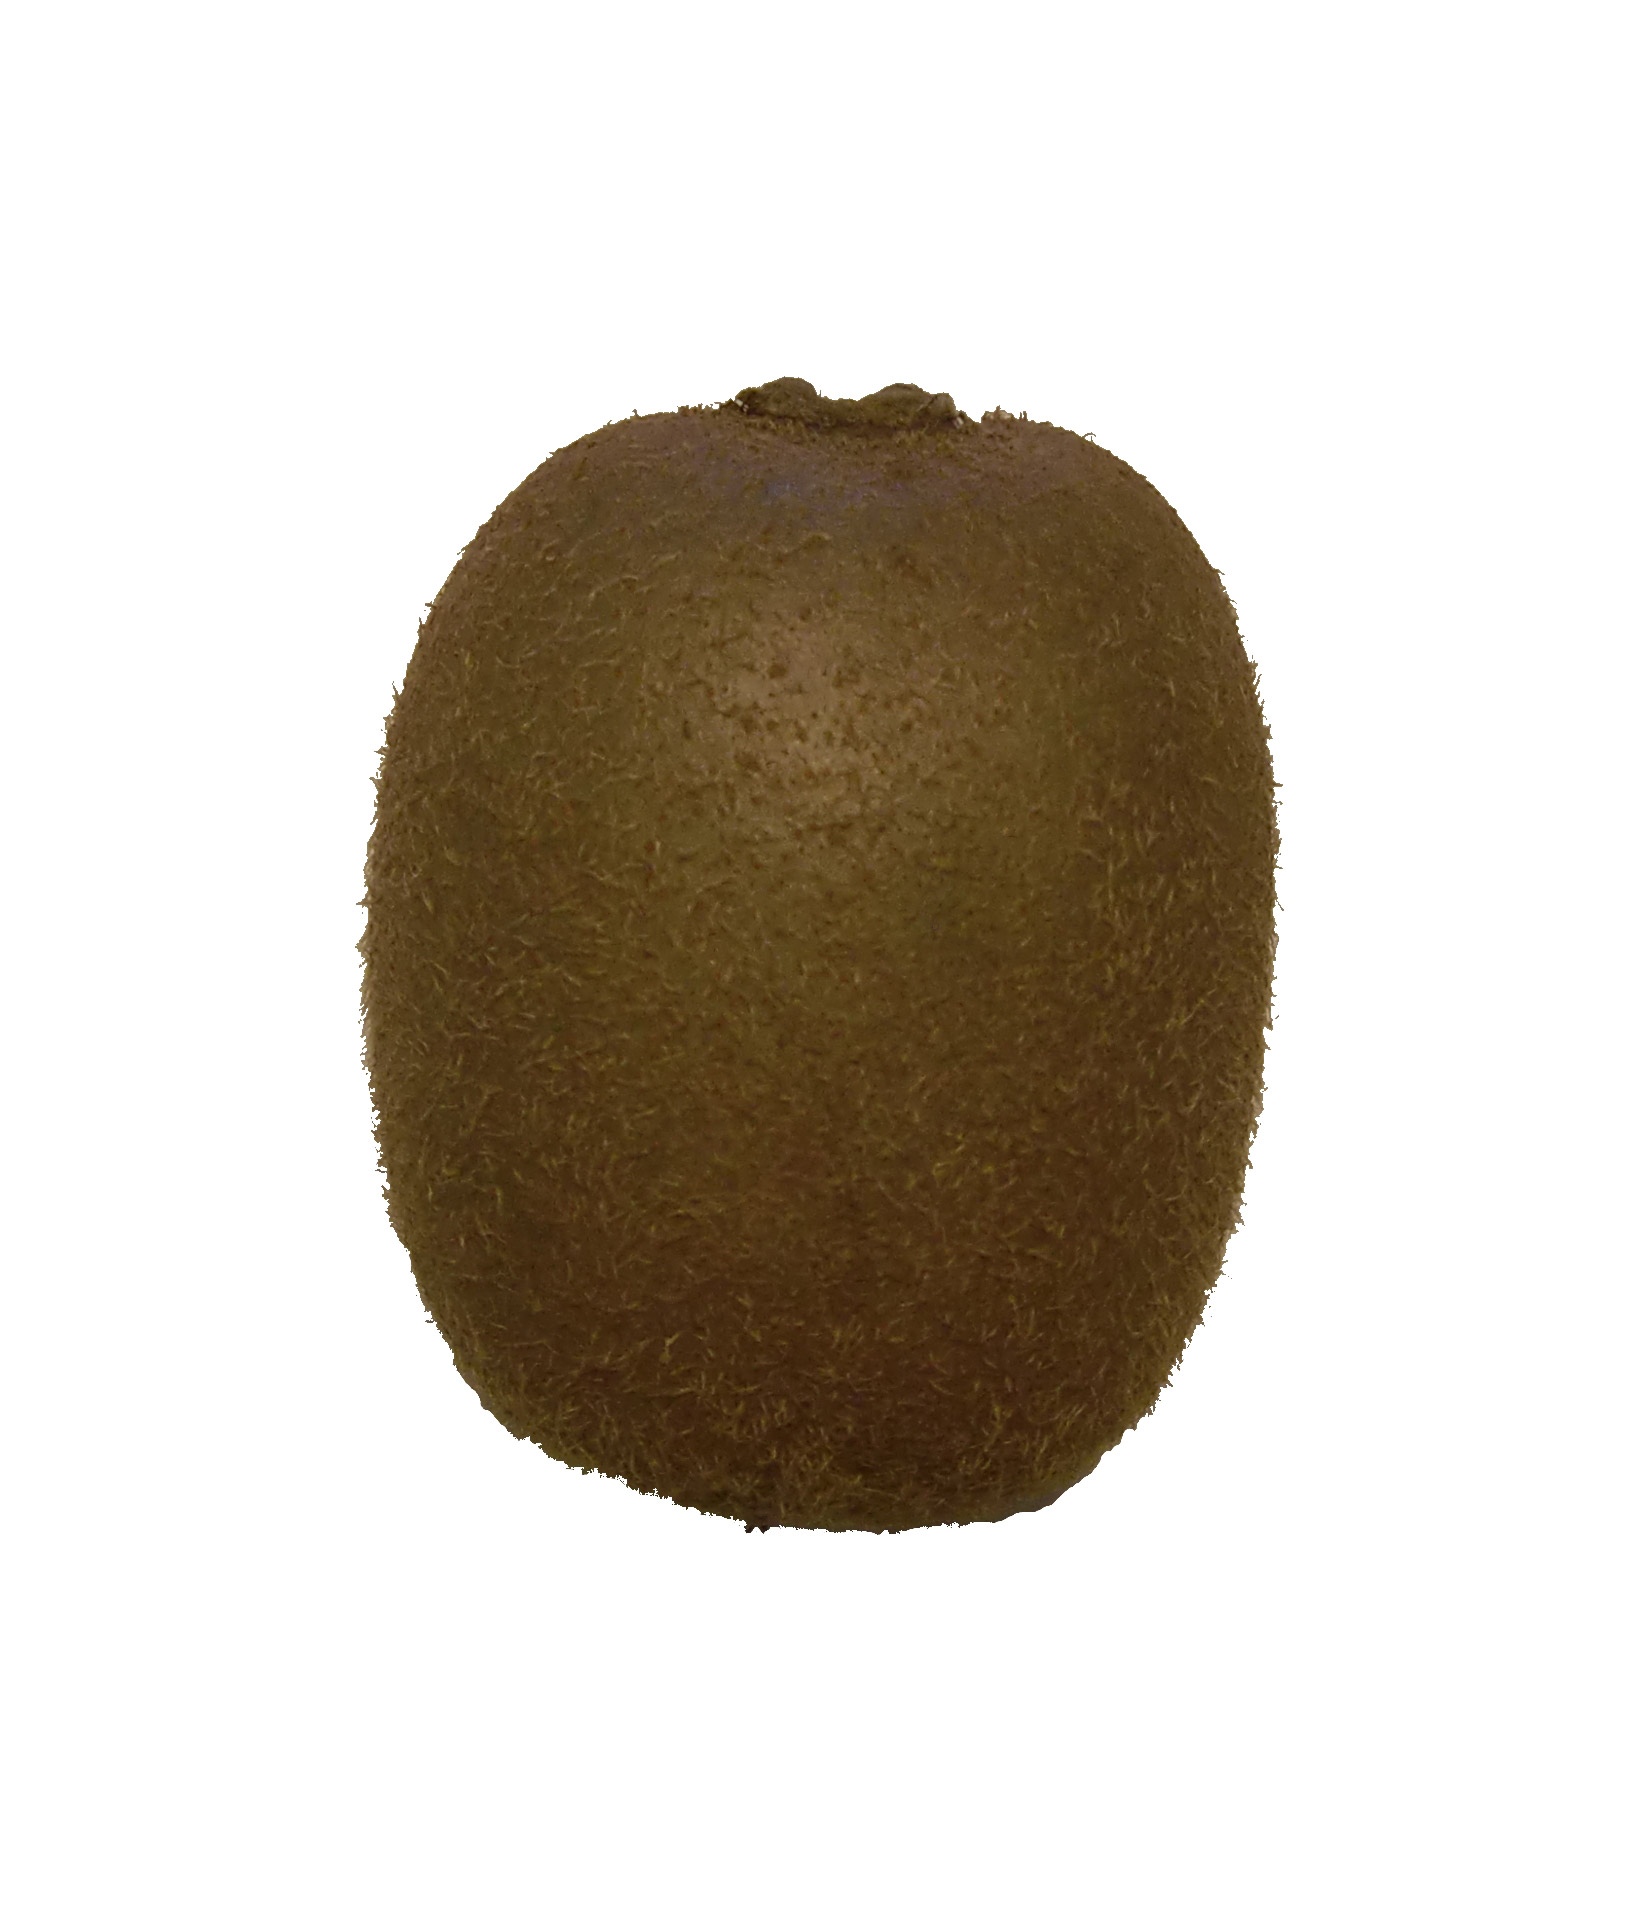 A close-up shot of a kiwifruit.